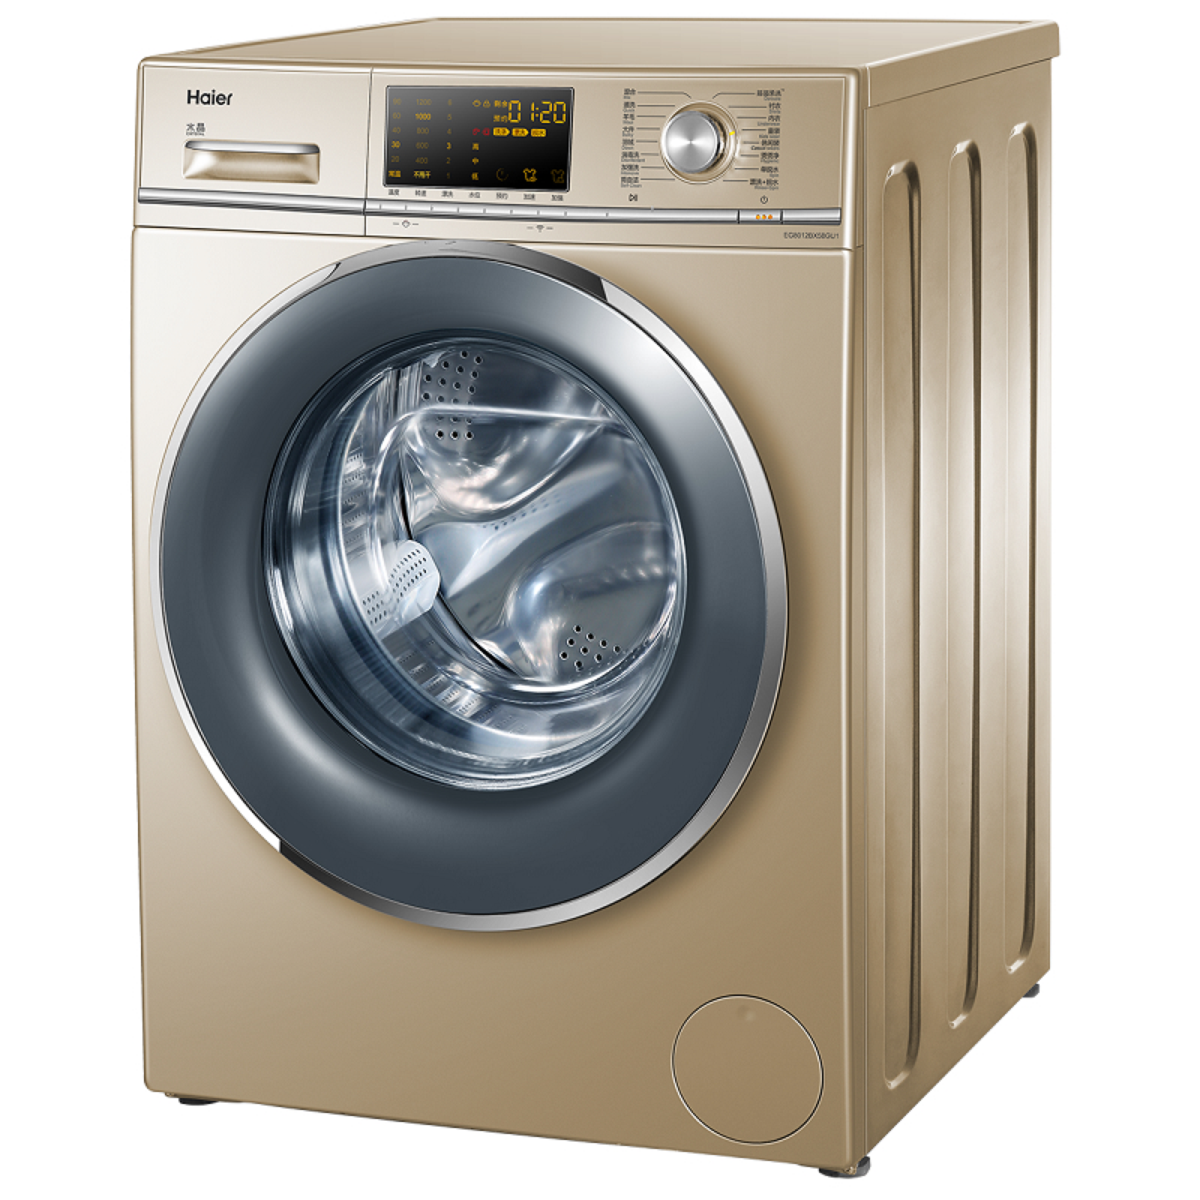 滚筒洗衣机和波轮洗衣机哪个洗得更干净？ - 知乎